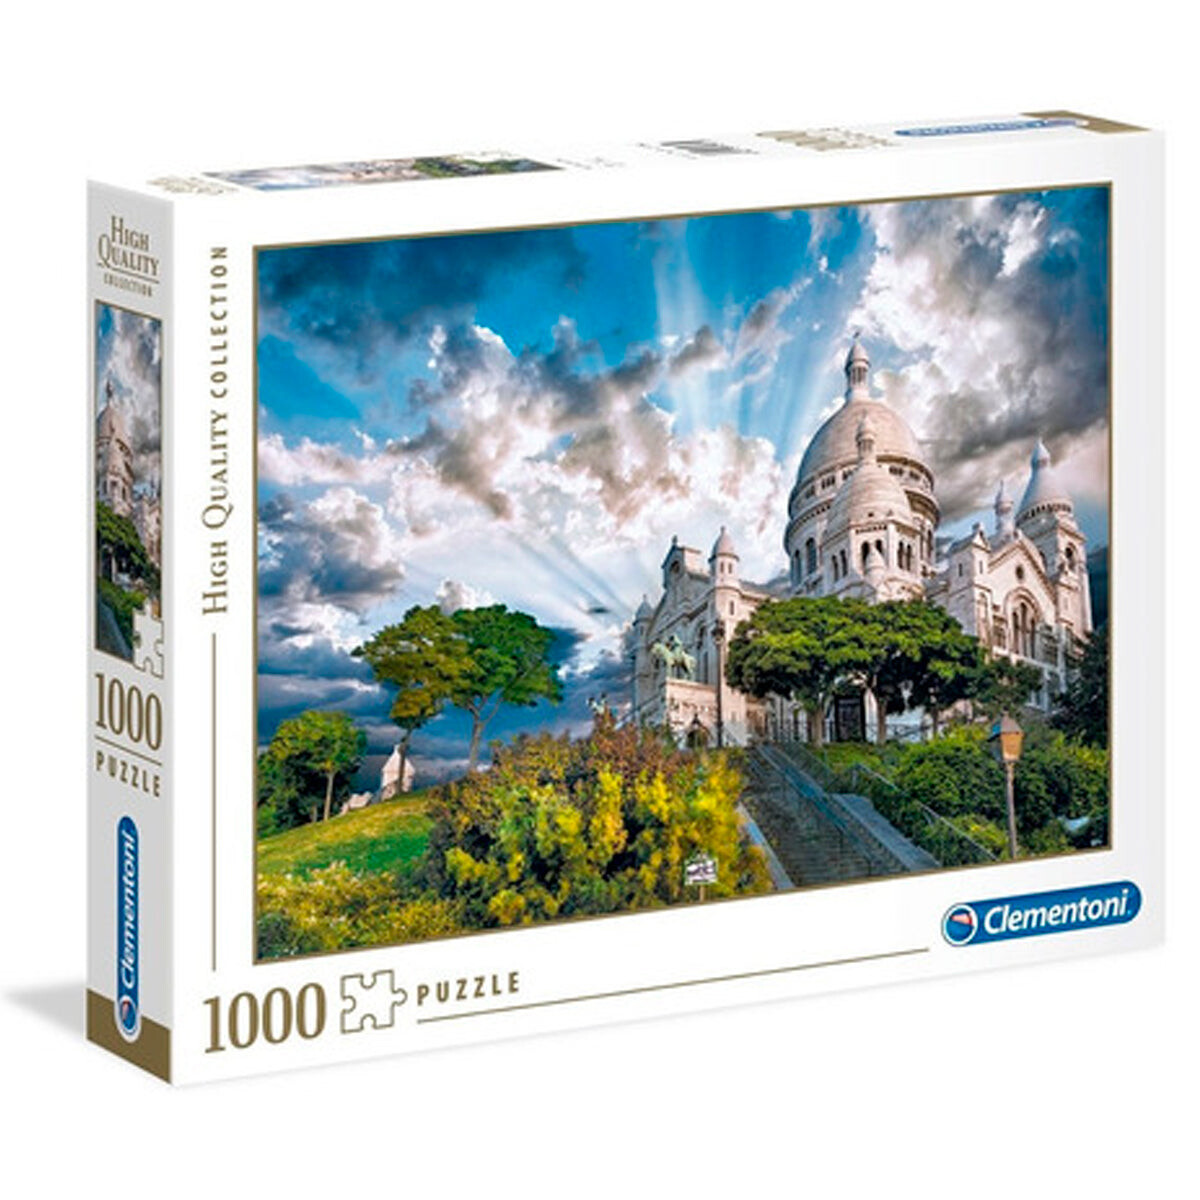 Puzzle Rompecabezas Clementoni 1000 Pzs Calidad HD - Montmartre 